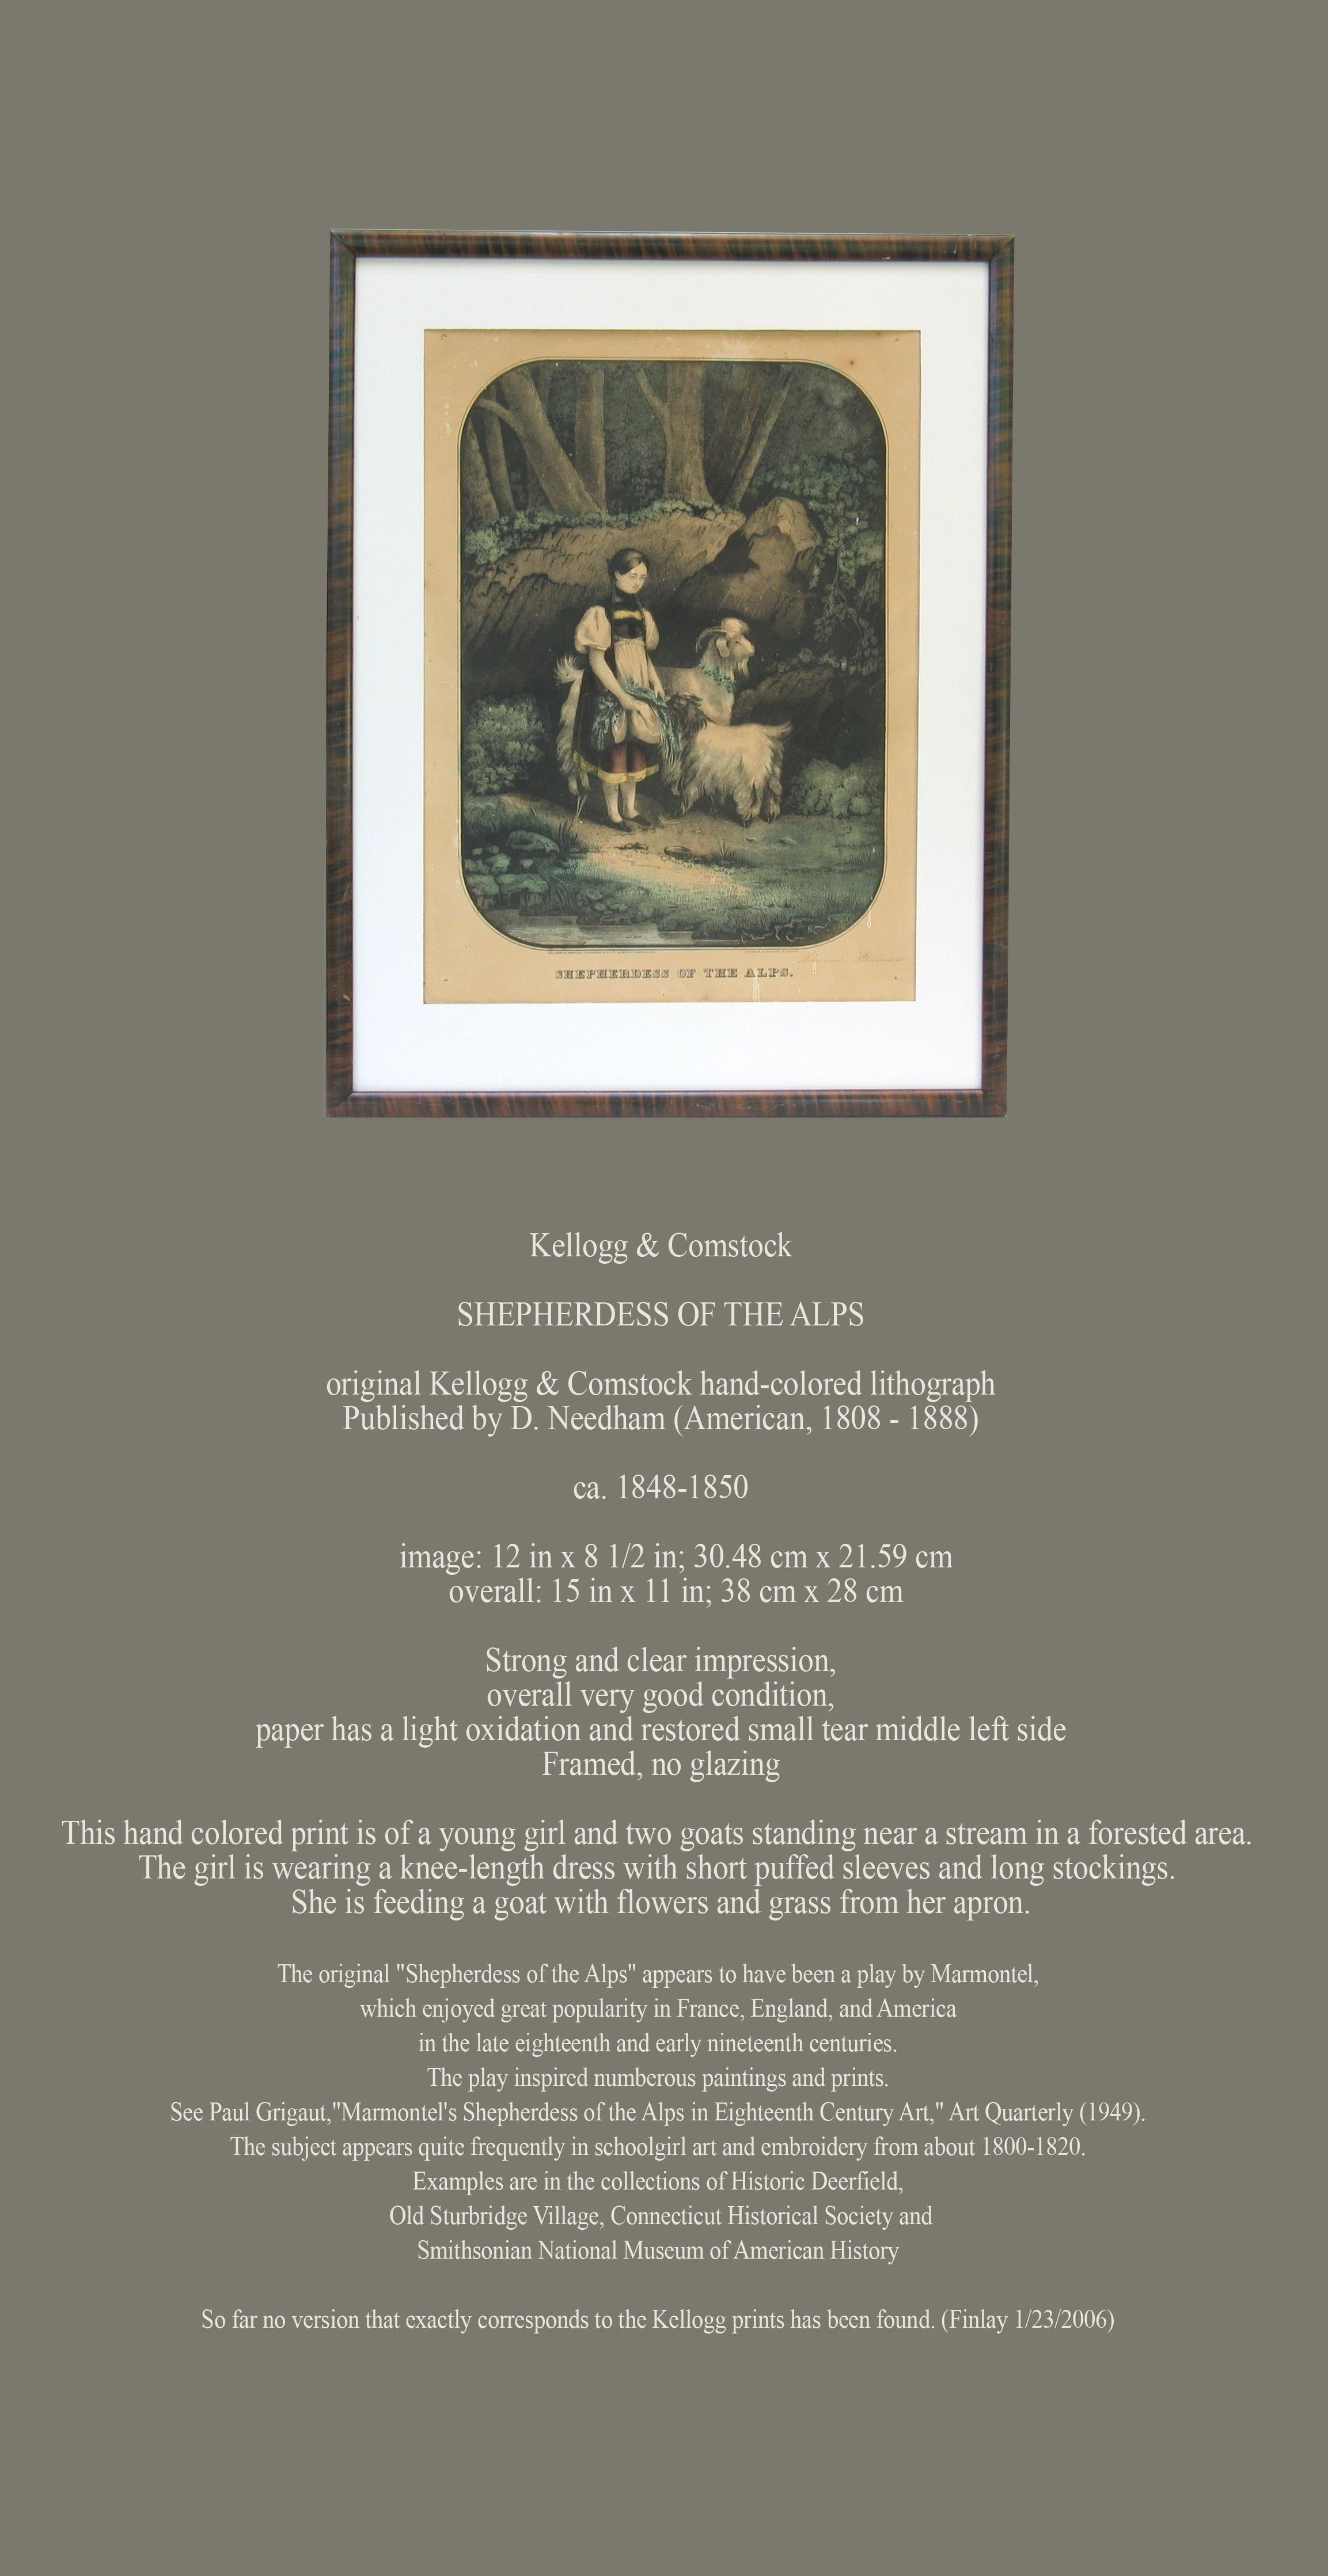 Kellogg & Comstock

BERGÈRE DES ALPES

lithographie originale coloriée à la main de Kellogg & Comstock,
Publié par D. Needham (américain, 1808 - 1888).

Circa. 1848-1850.

image : 12 in x 8 1/2 in ; 30,48 cm x 21,59 cm.
dimensions hors